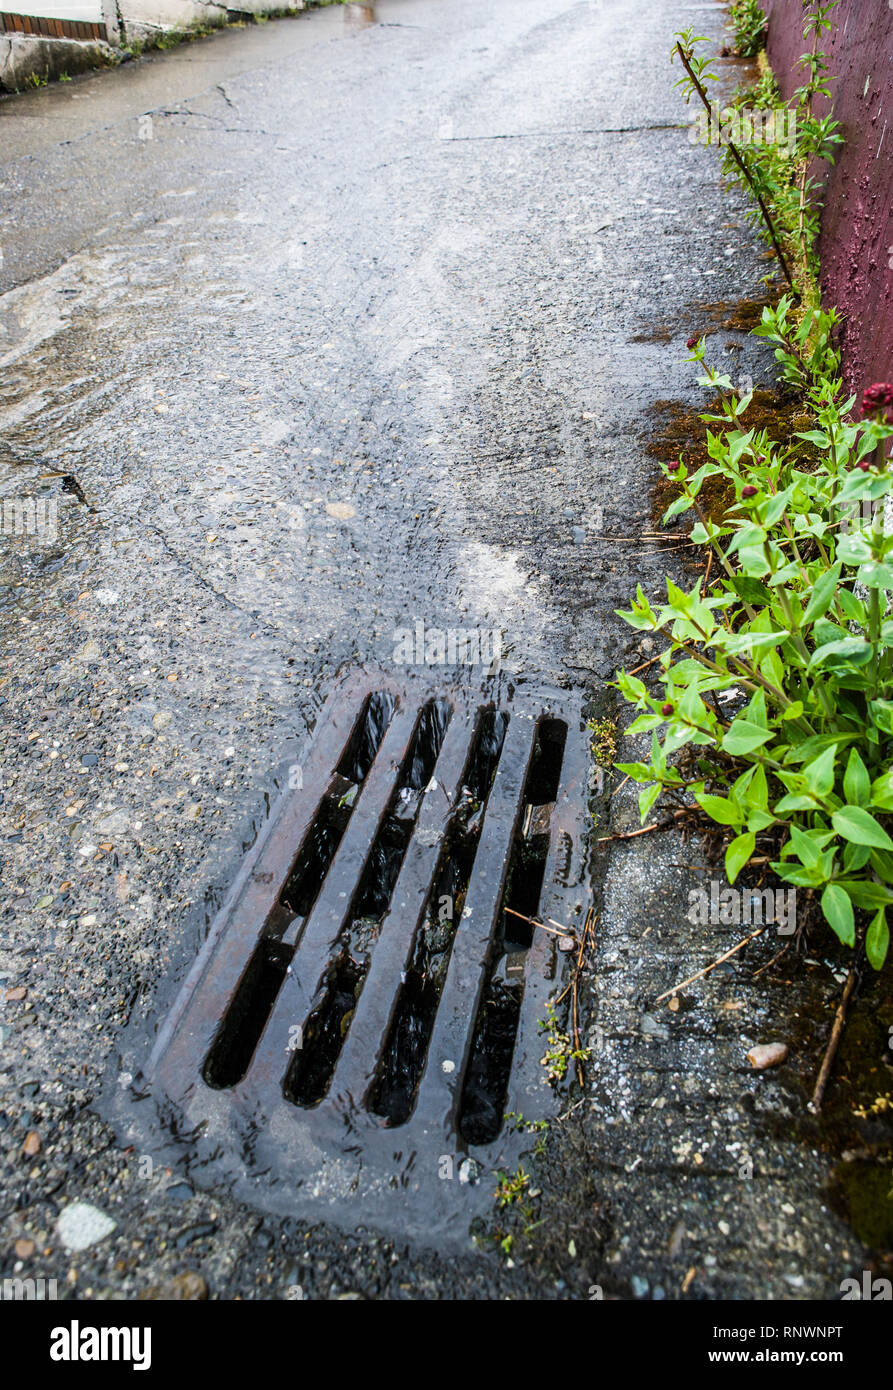 L'eau qui coule dans la rue à un collecteur d'eaux pluviales sur un jour de pluie. Banque D'Images